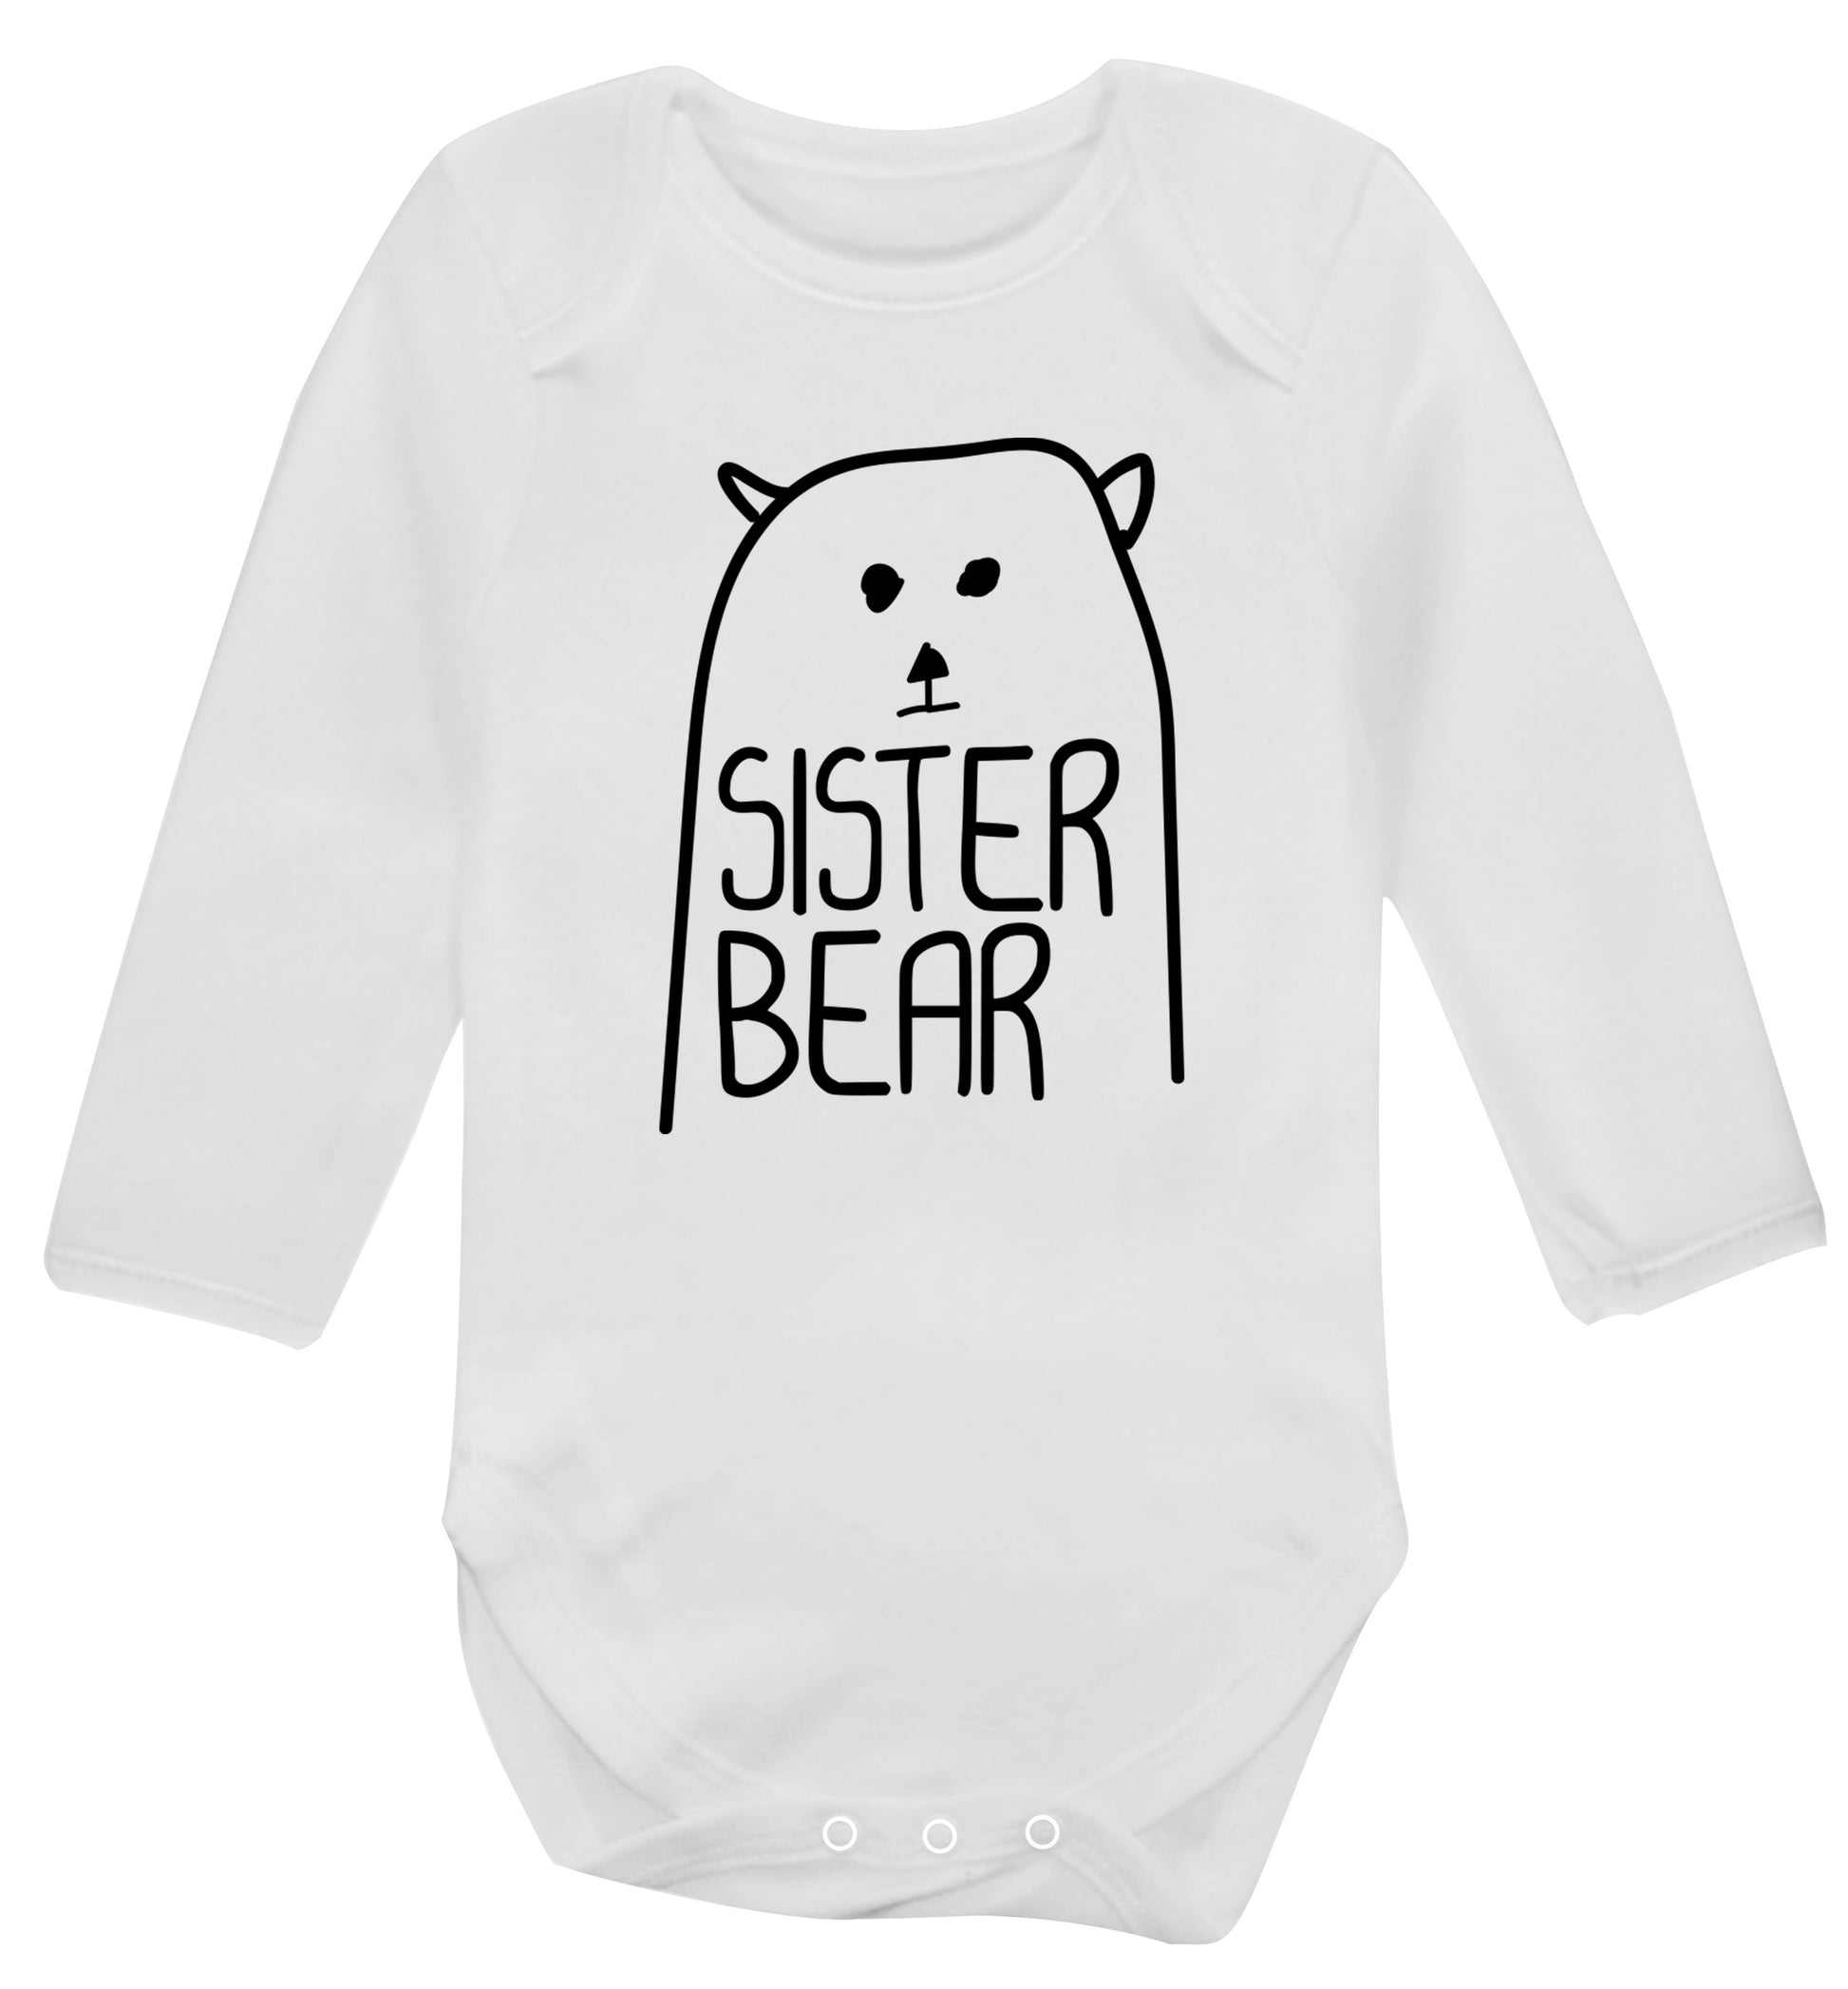 Sister bear Baby Vest long sleeved white 6-12 months